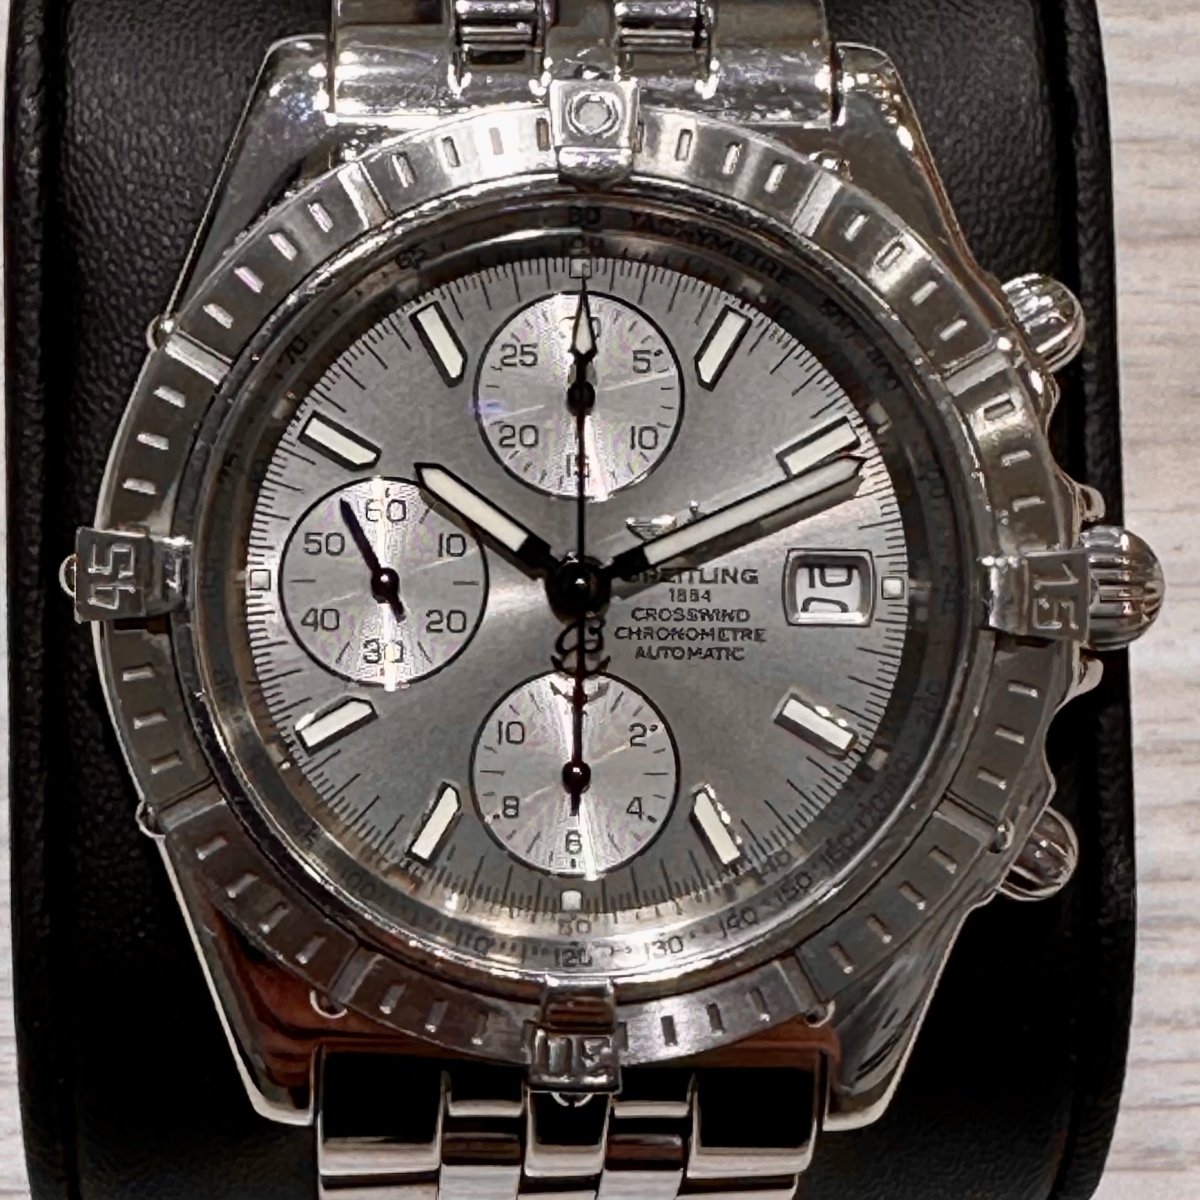 ブライトリングのSS A13355 クロスウィンド クロノグラフ 自動巻き 腕時計の買取実績です。